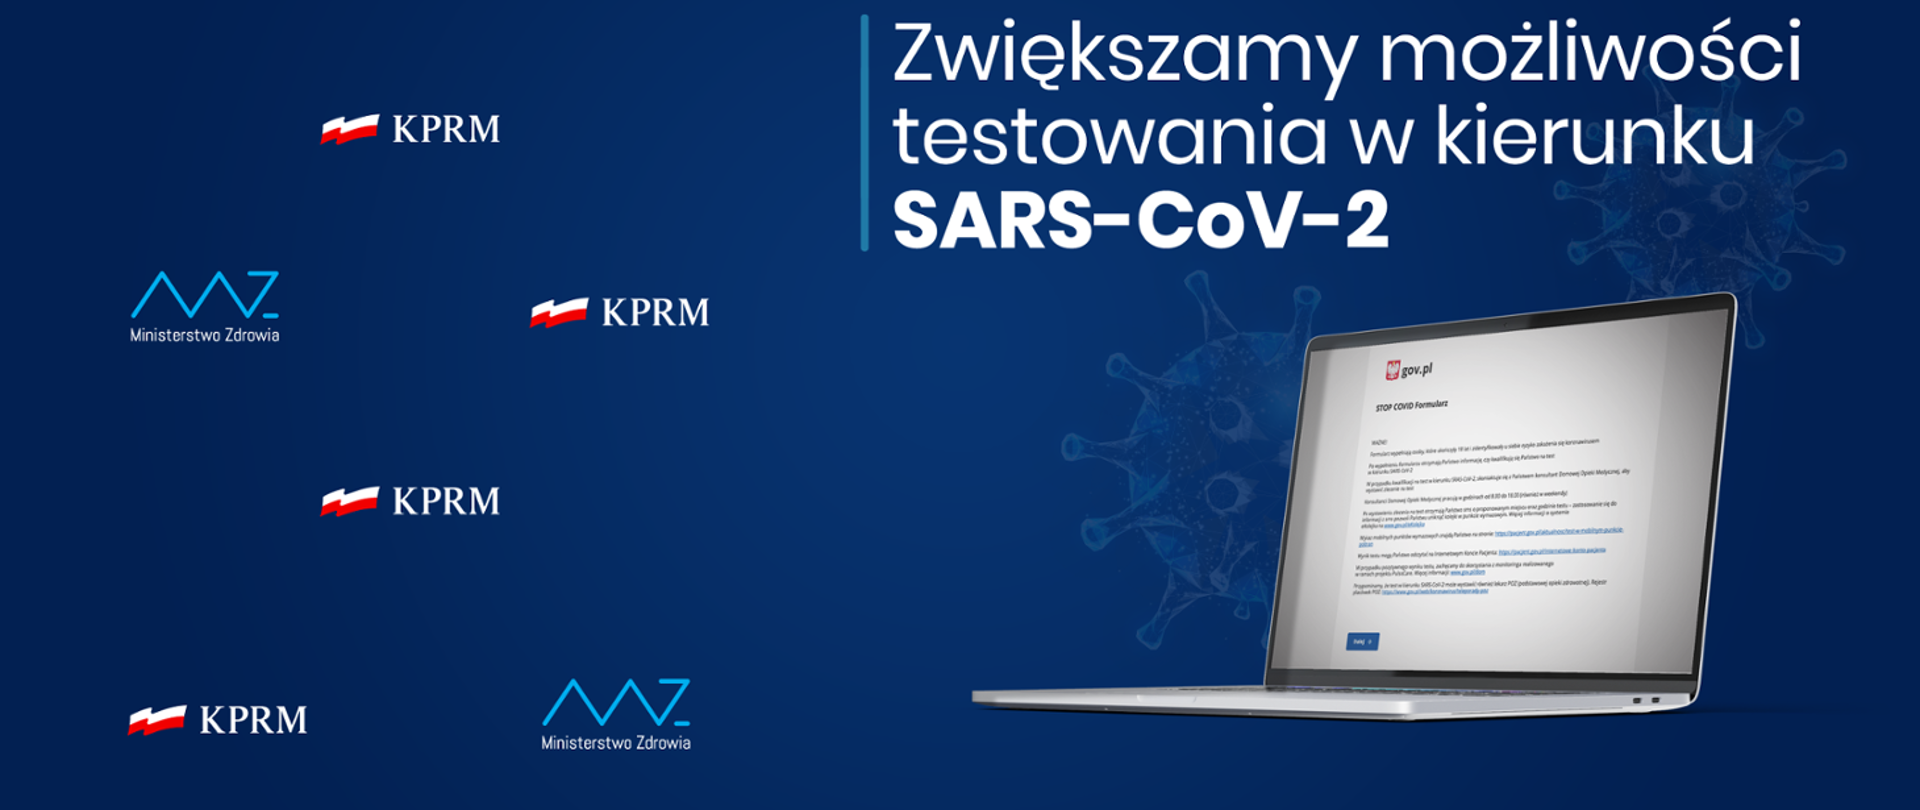 Zwiększamy możliwości testowania w kierunku SARS-Cov-2